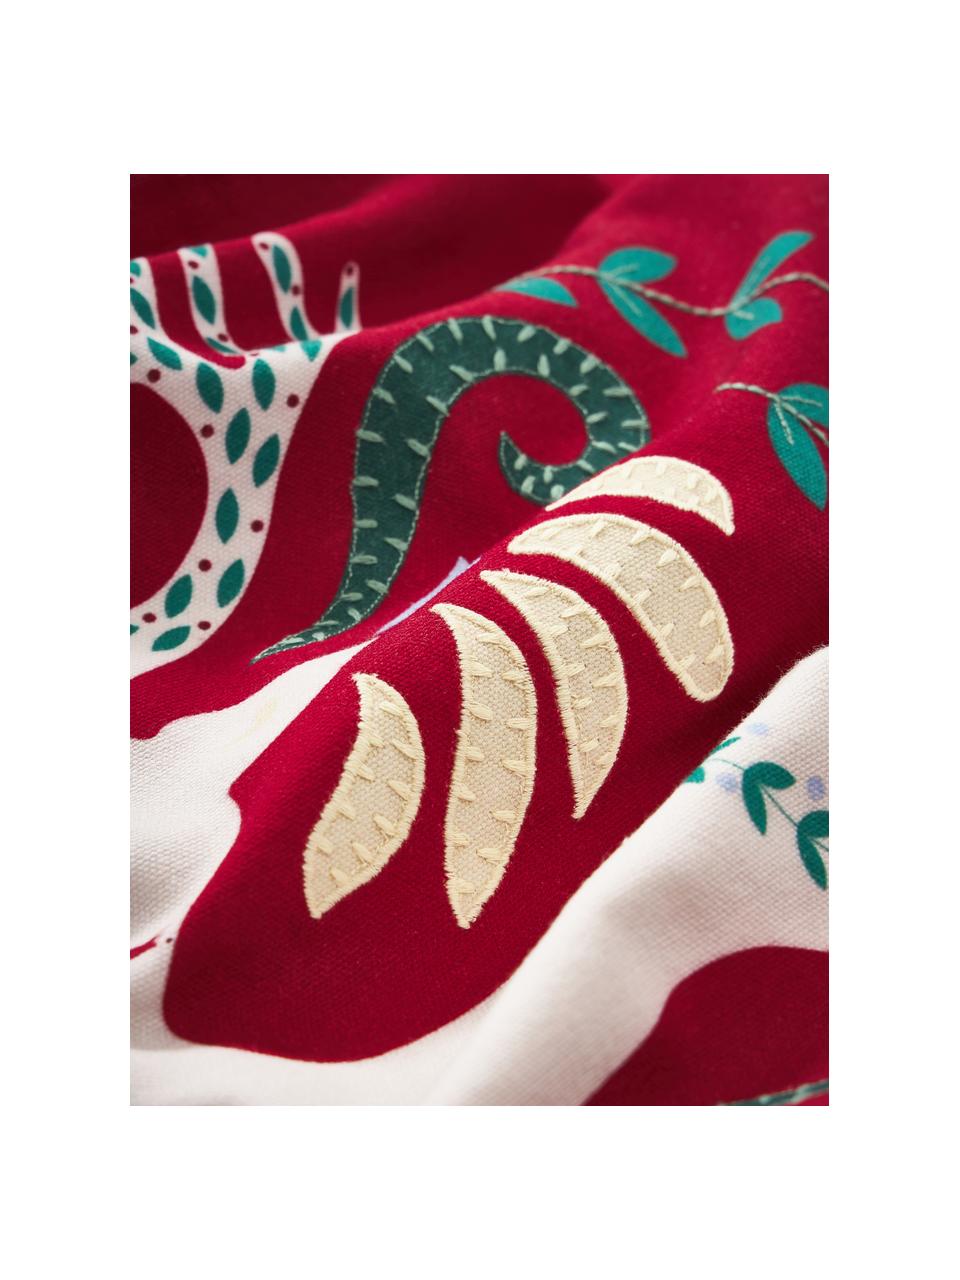 Kissenhülle Prancer mit winterlichem Motiv, Bezug: 100 % Baumwolle, Rot, Weiß, B 45 x L 45 cm